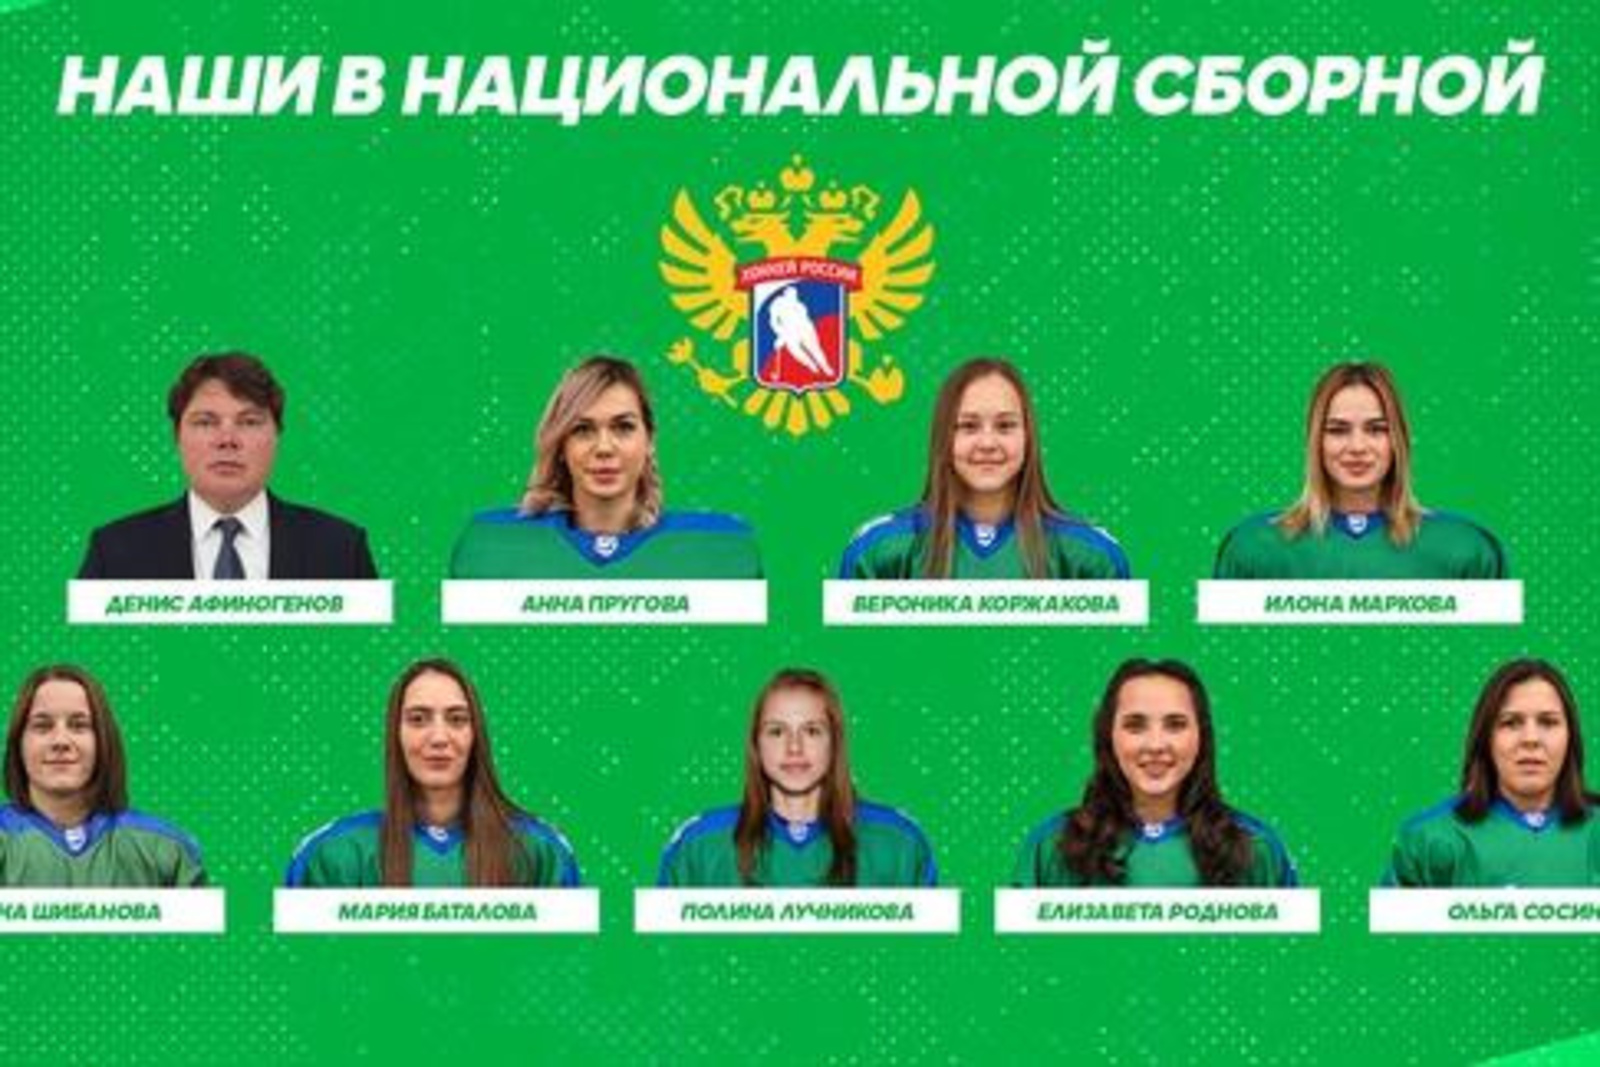 Хоккеистки из Башкирии были внесены в список расширенного состава сборной России для подготовки к чемпионату мира